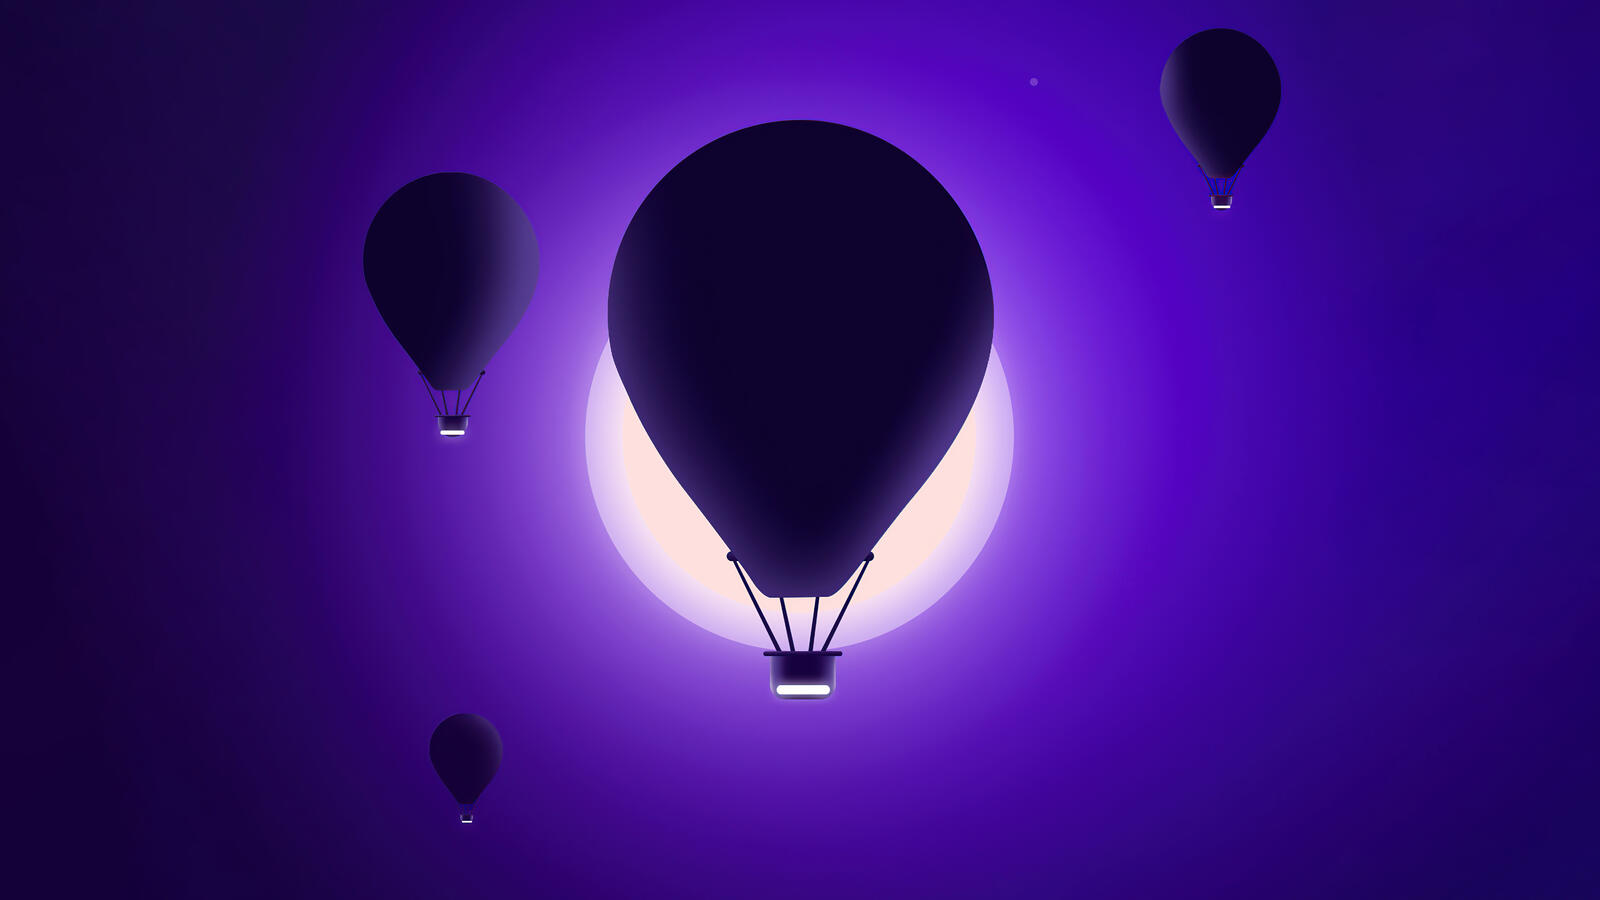 Бесплатное фото Воздушный шар на фиолетовом фоне